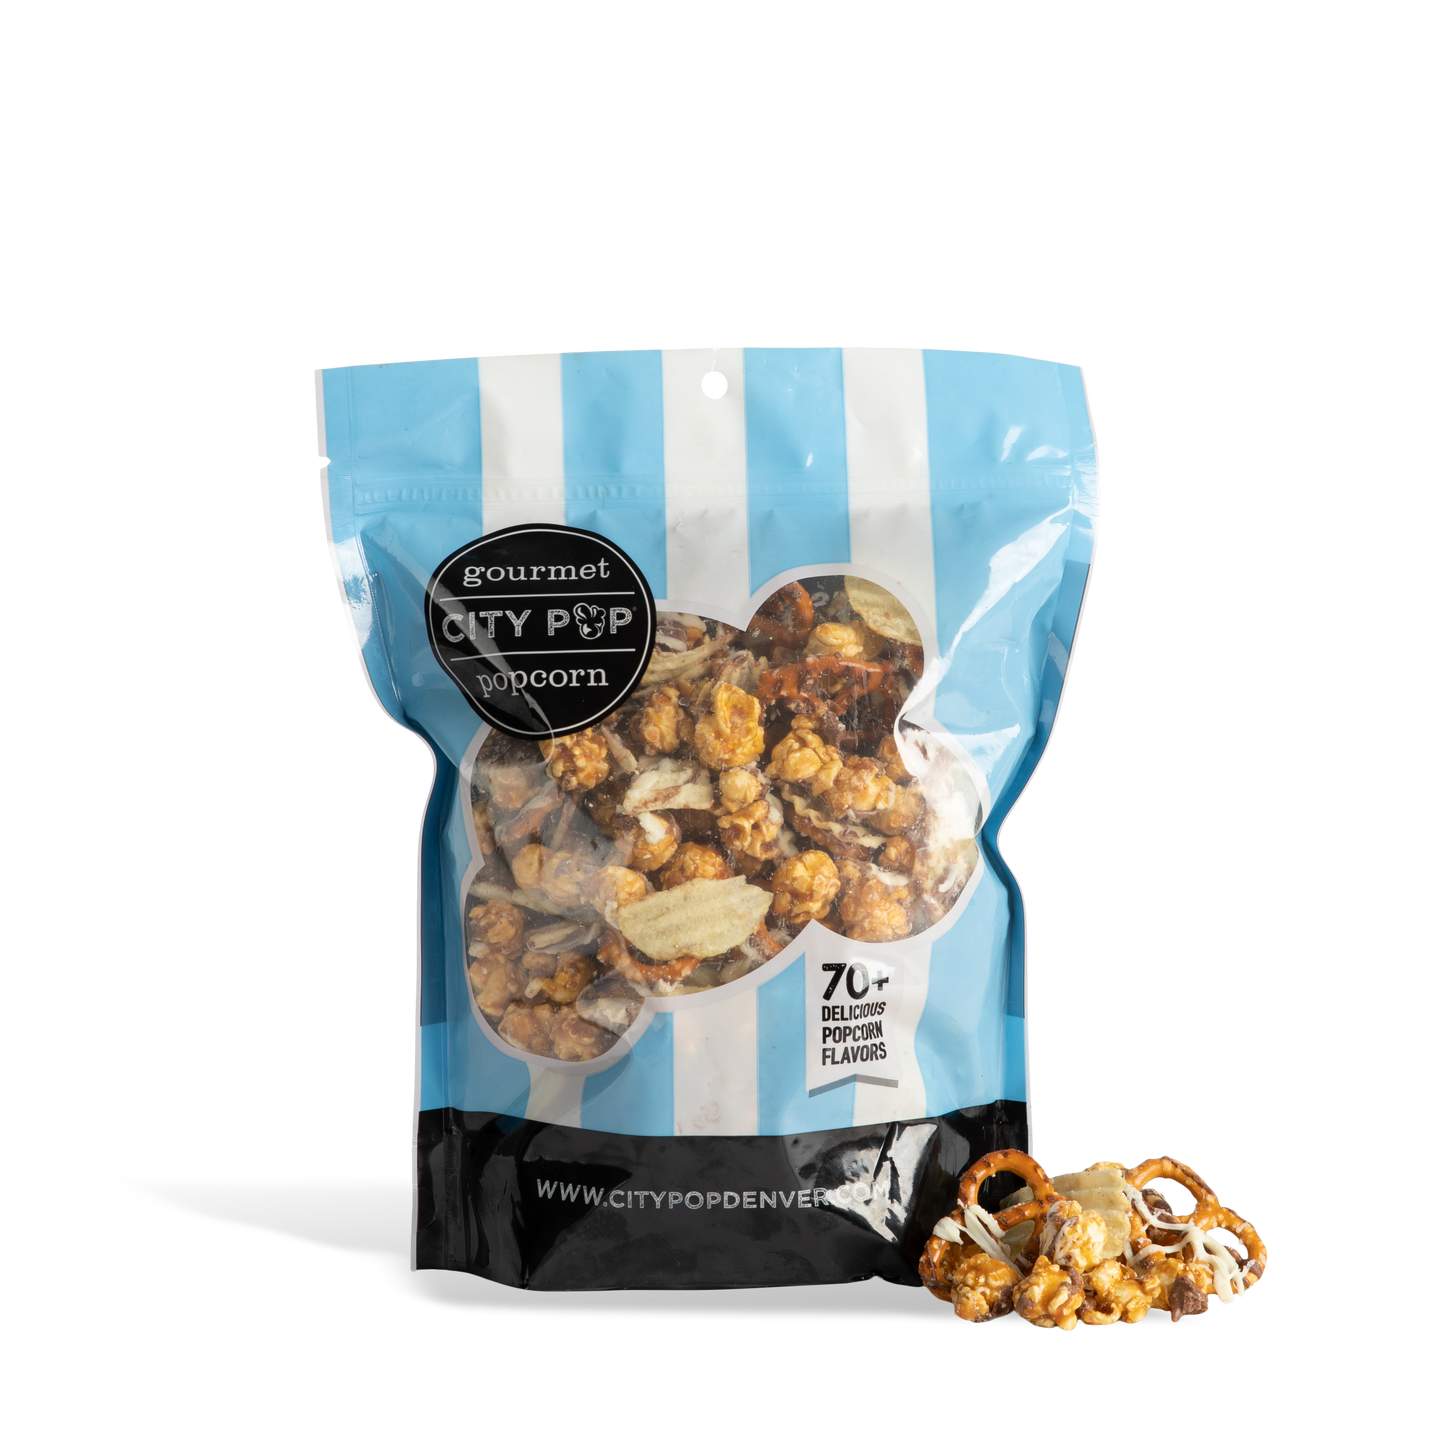 City Pop Pop-Chizel Popcorn Bag With Kernel